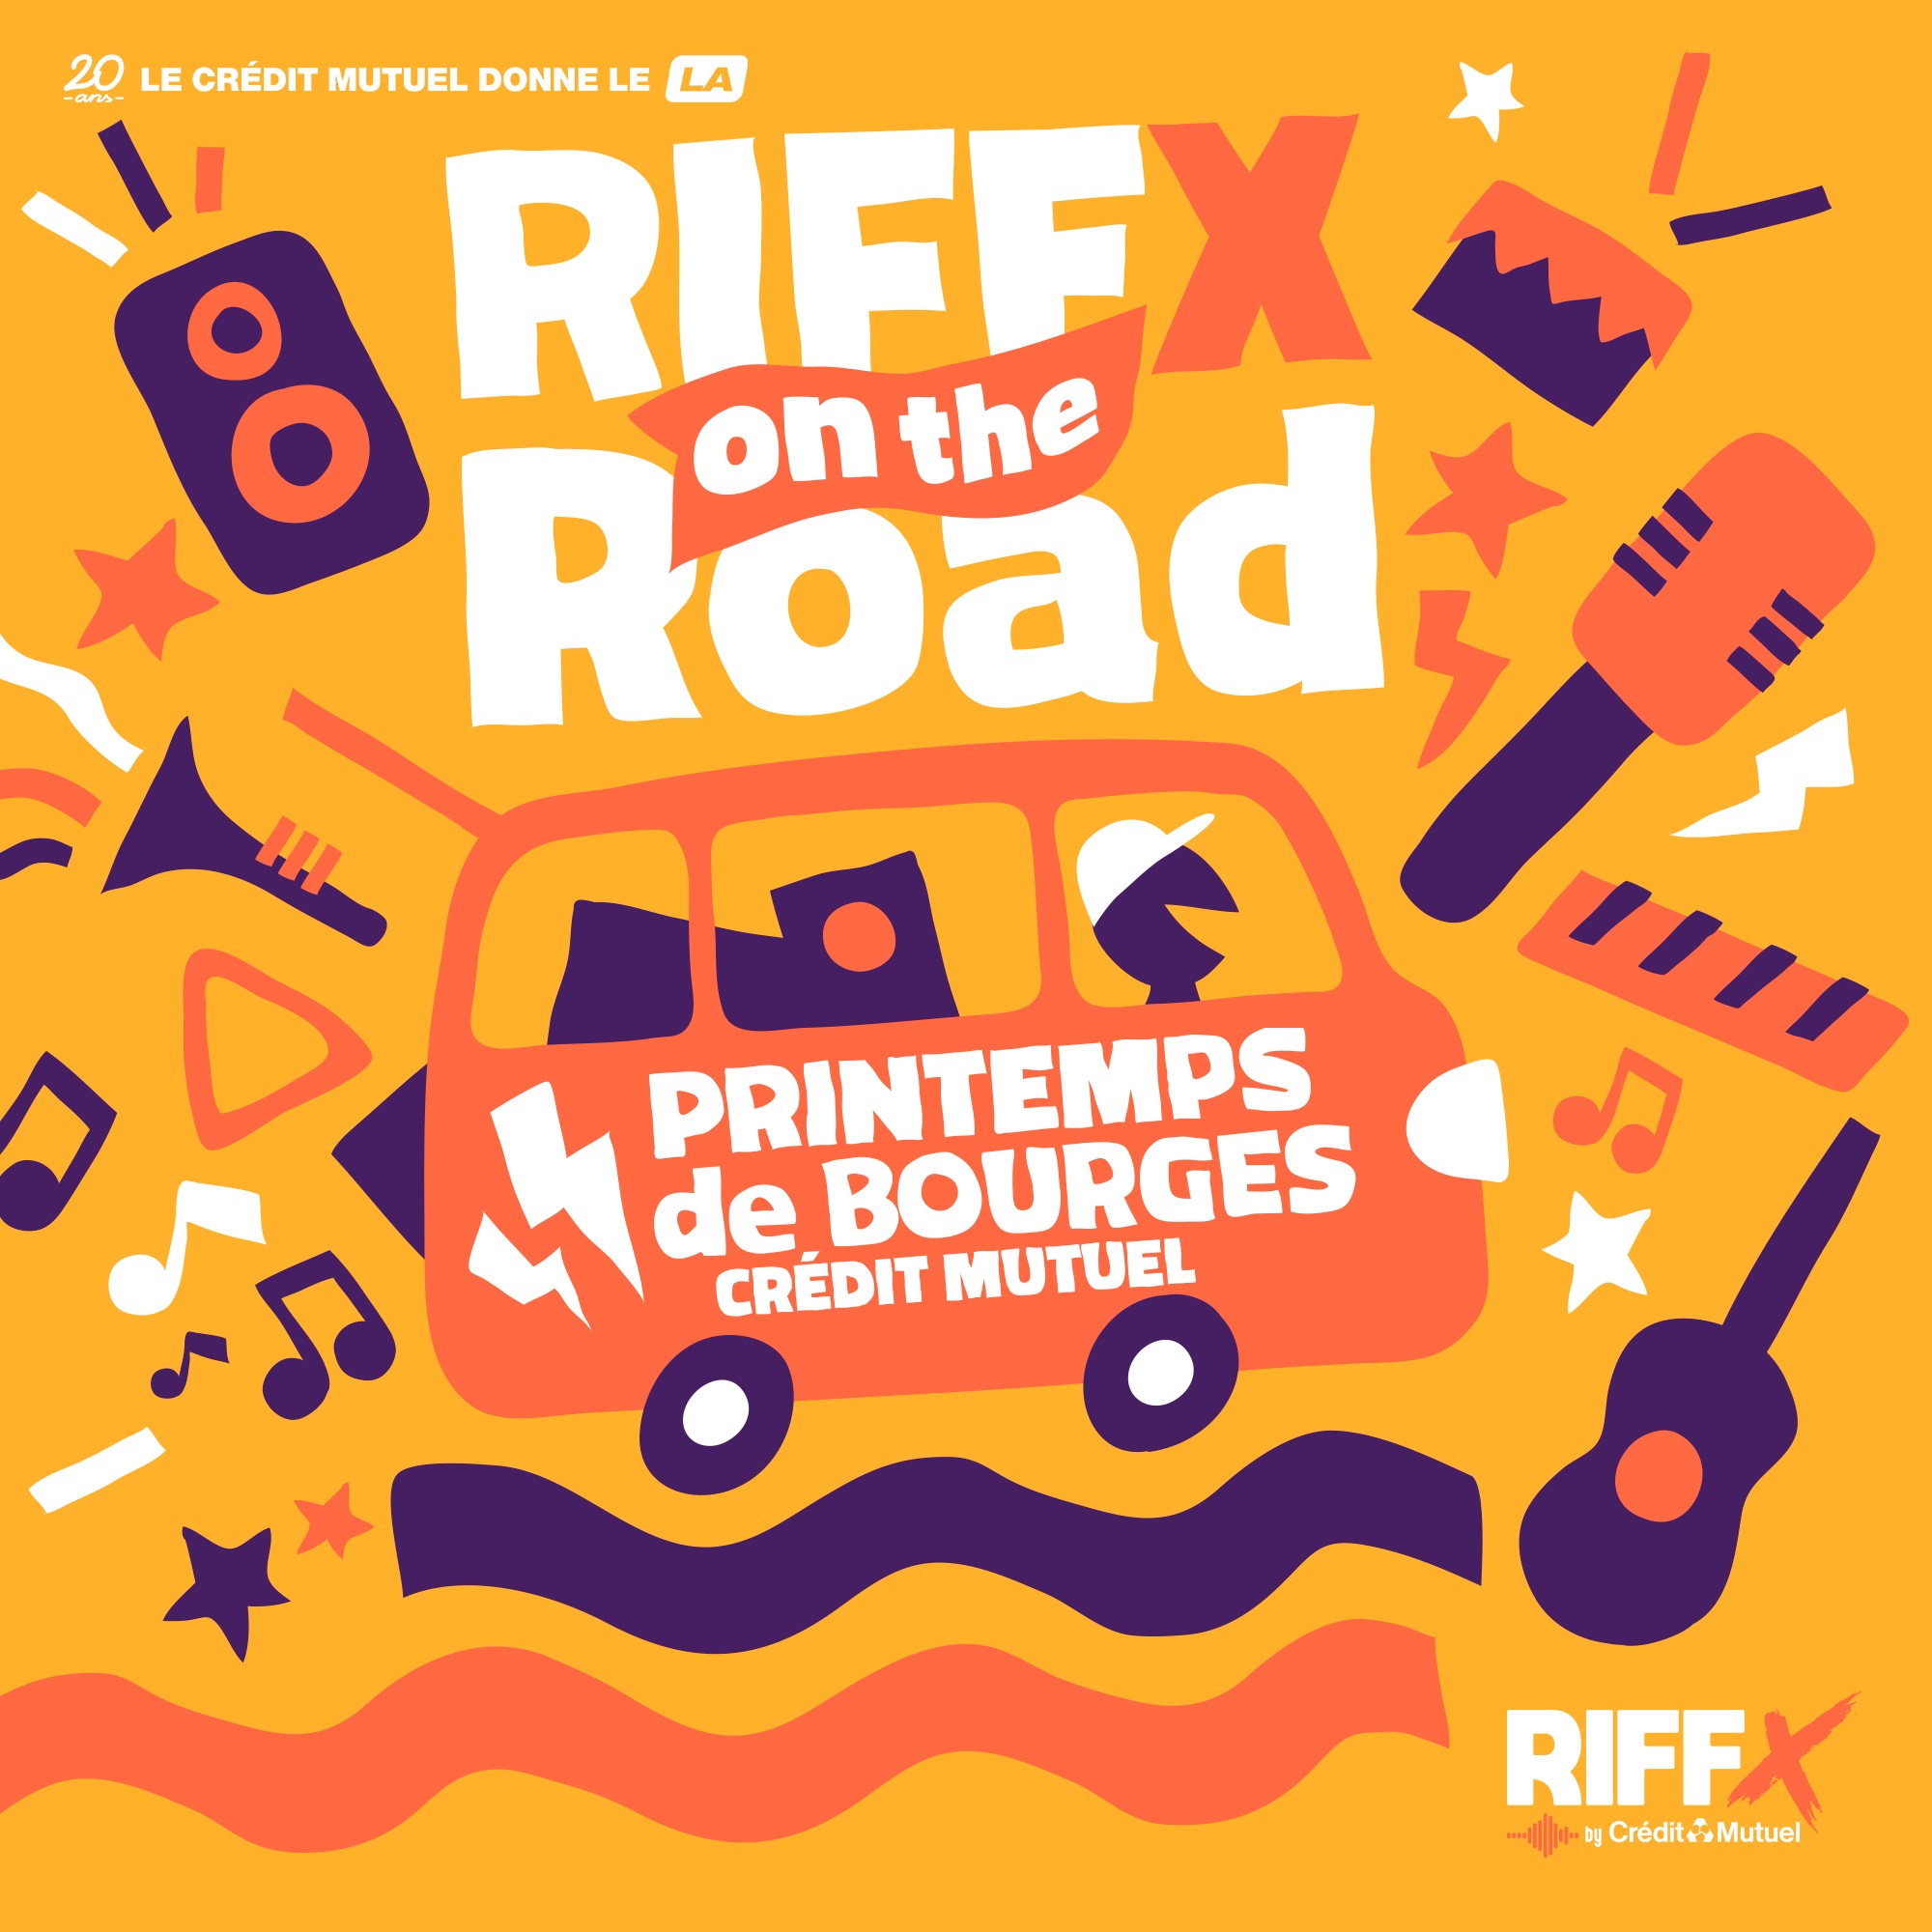 RIFFX on the Road au Printemps de Bourges Crédit Mutuel